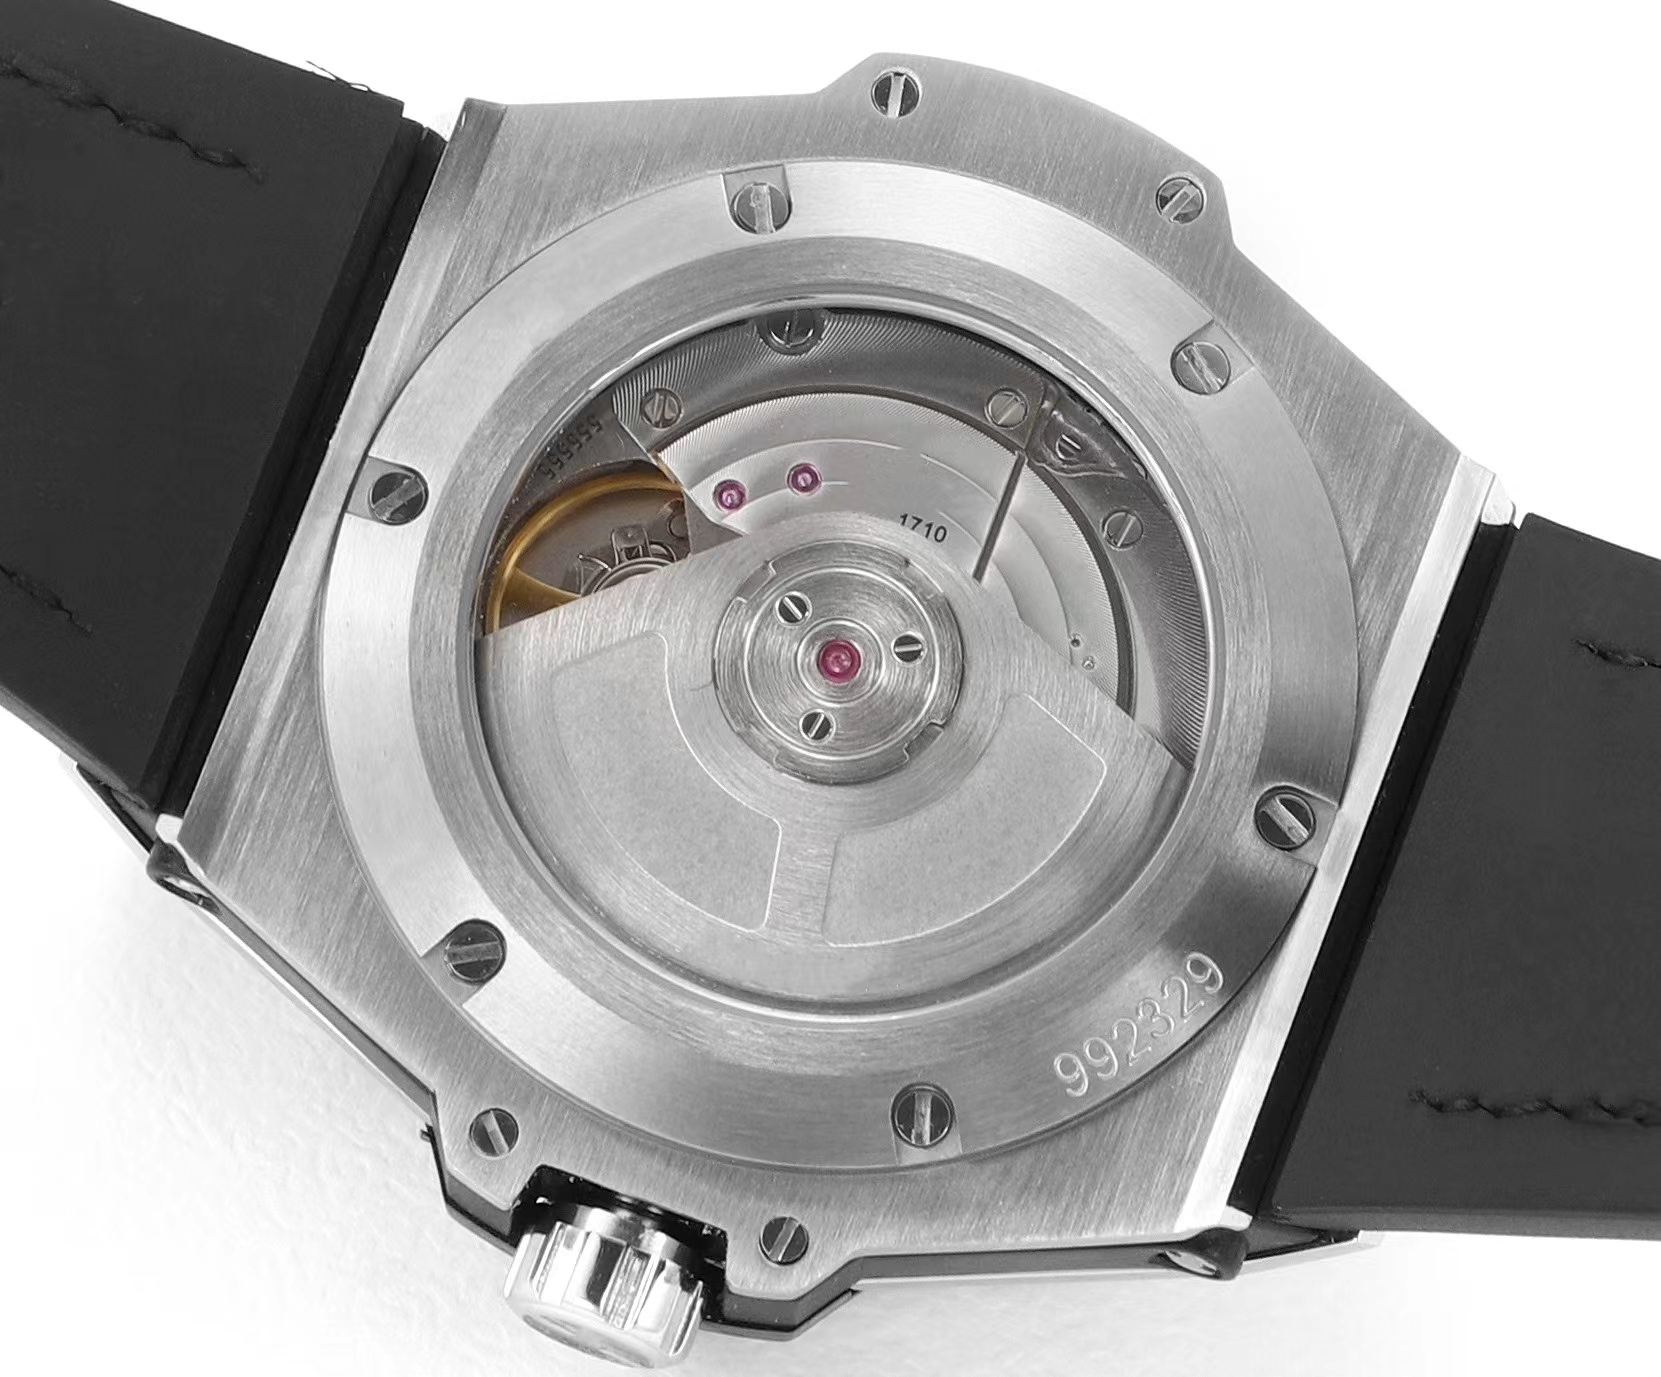 Unisex luxe mechanisch horloge zilveren dial set met diamant 39 mm blauwe riem en letterlijke super senior beweging 1710 volledig automatische keten romantisch regenboog horloge